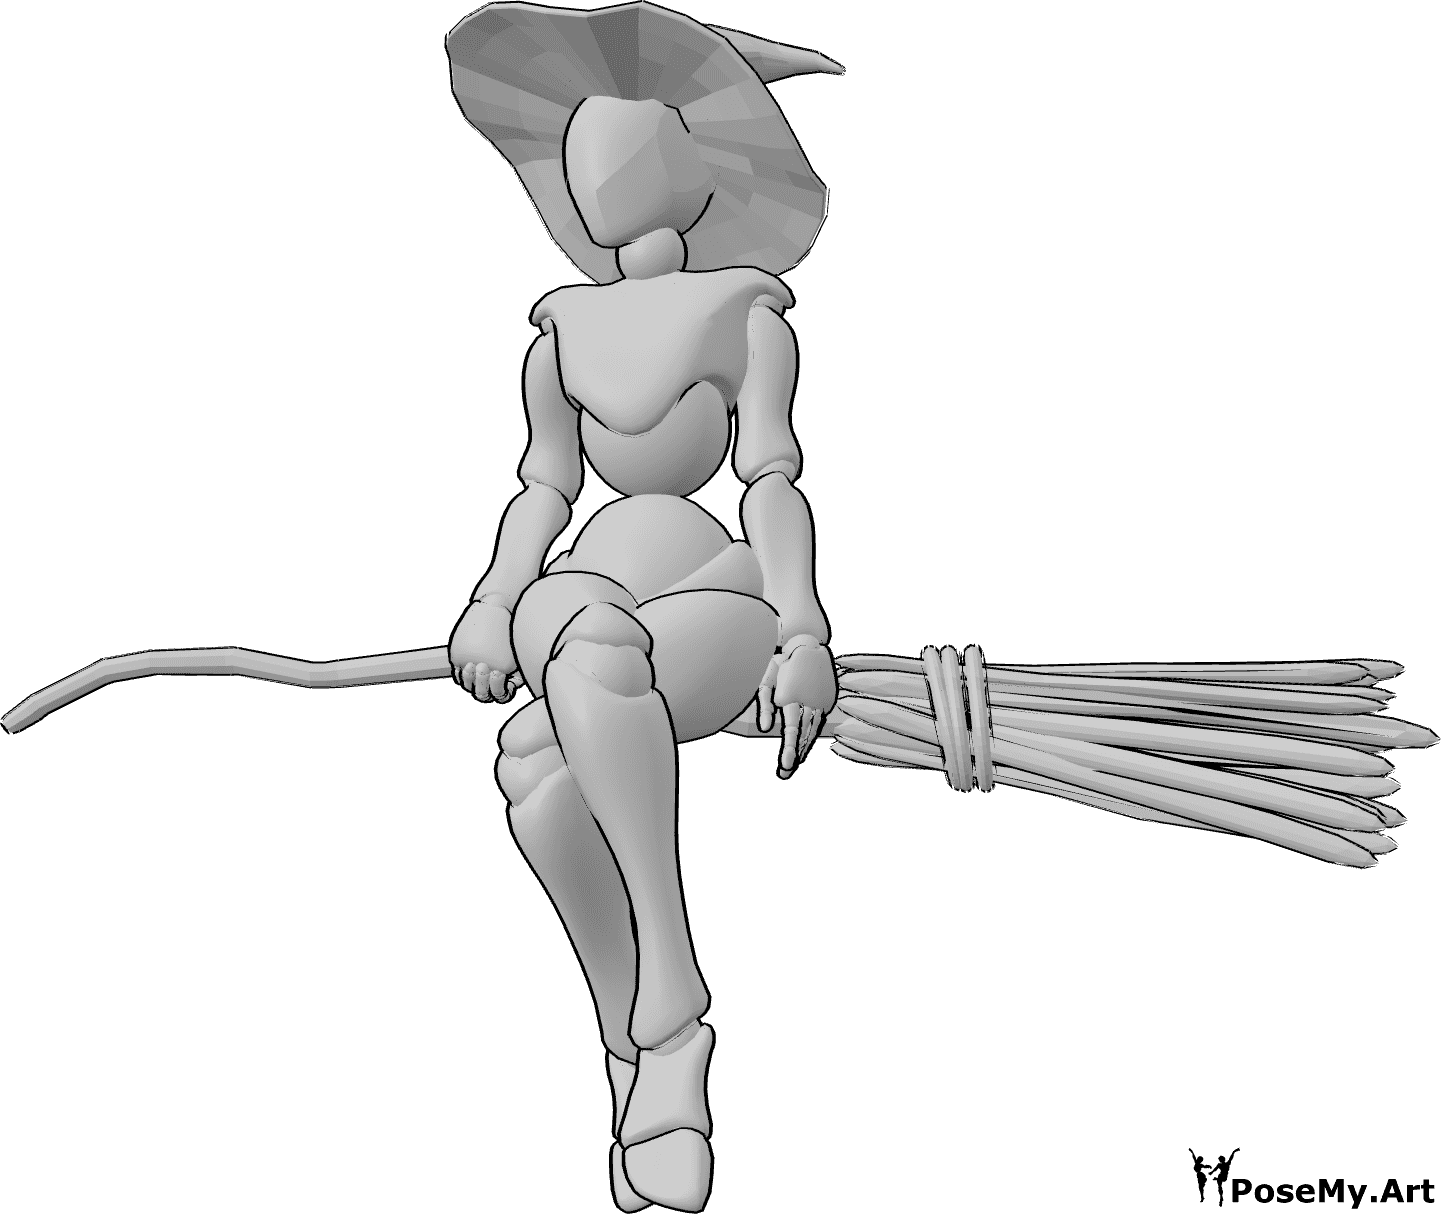 Posen-Referenz- Hexenbesen schwebende Pose - Die weibliche Hexe sitzt mit gekreuzten Beinen auf dem Besen, trägt einen Hexenhut und blickt nach vorne